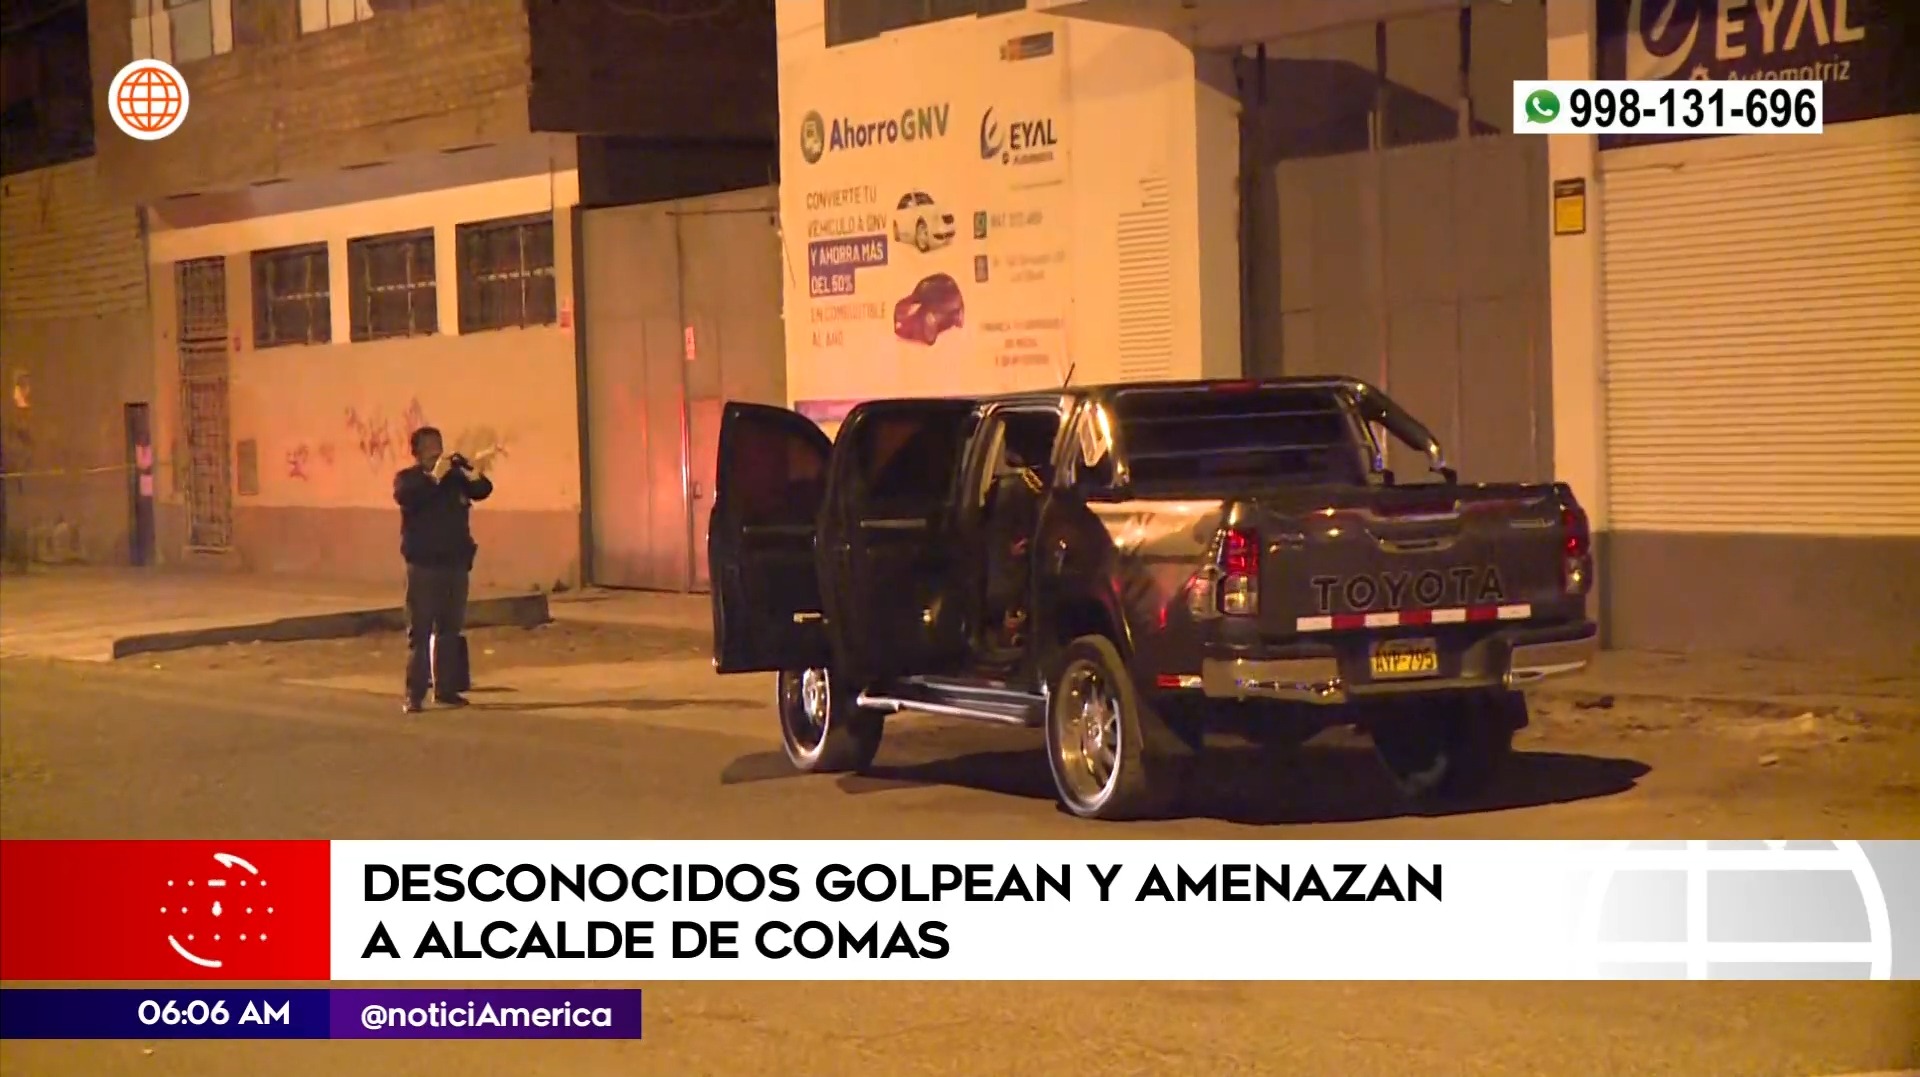 Sujetos se llevaron camioneta del alcalde y luego la abandonaron | América Noticias